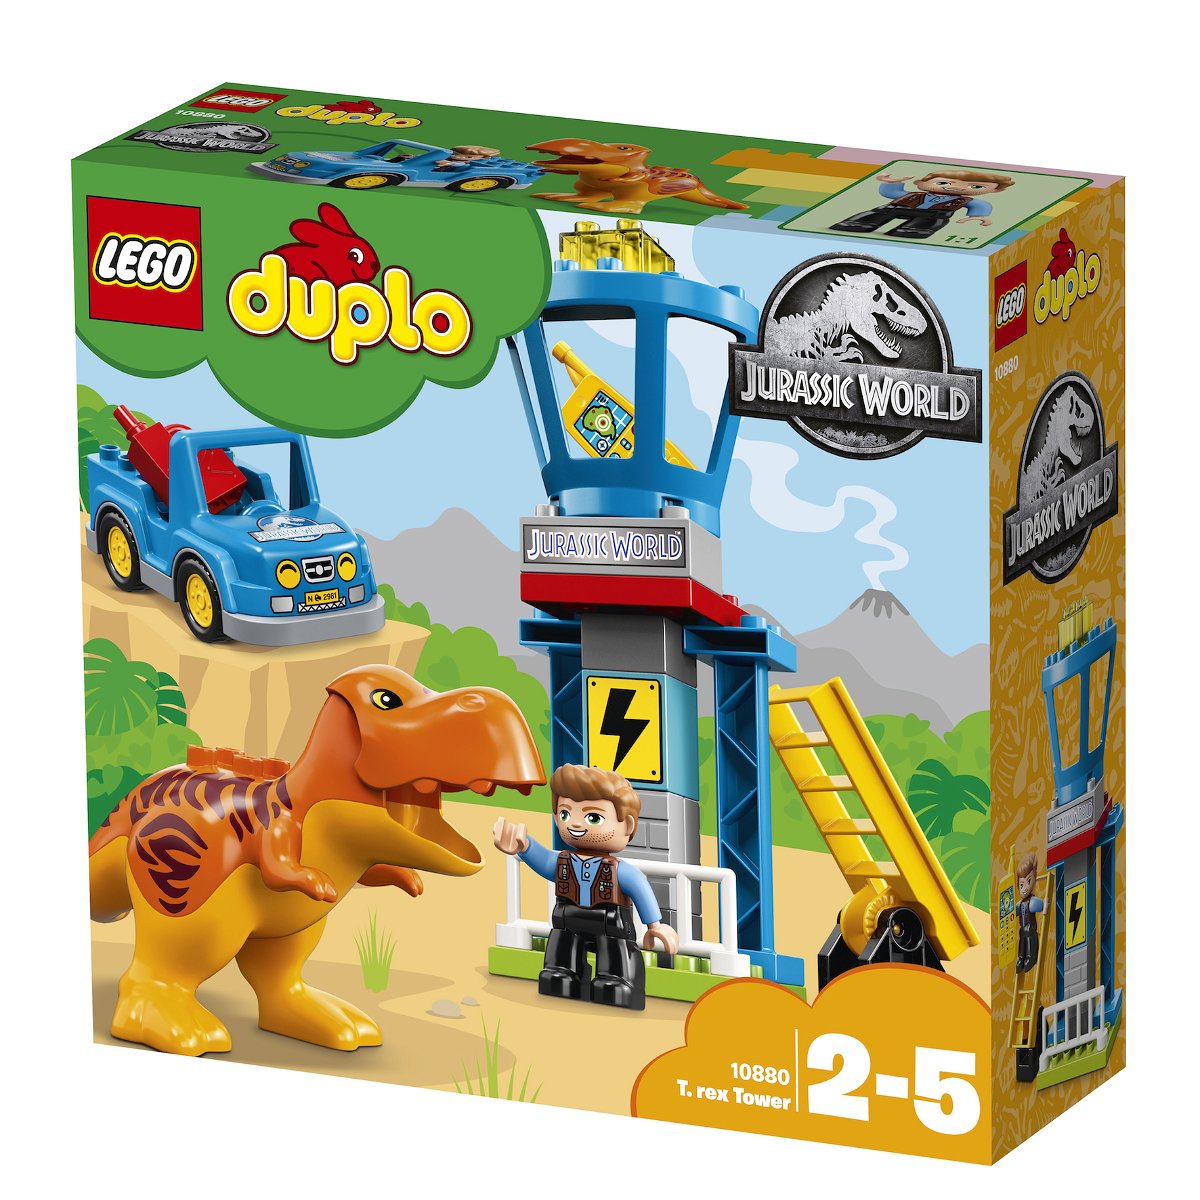 Dettagli del box del set LEGO DUPLO La torre del T. rex